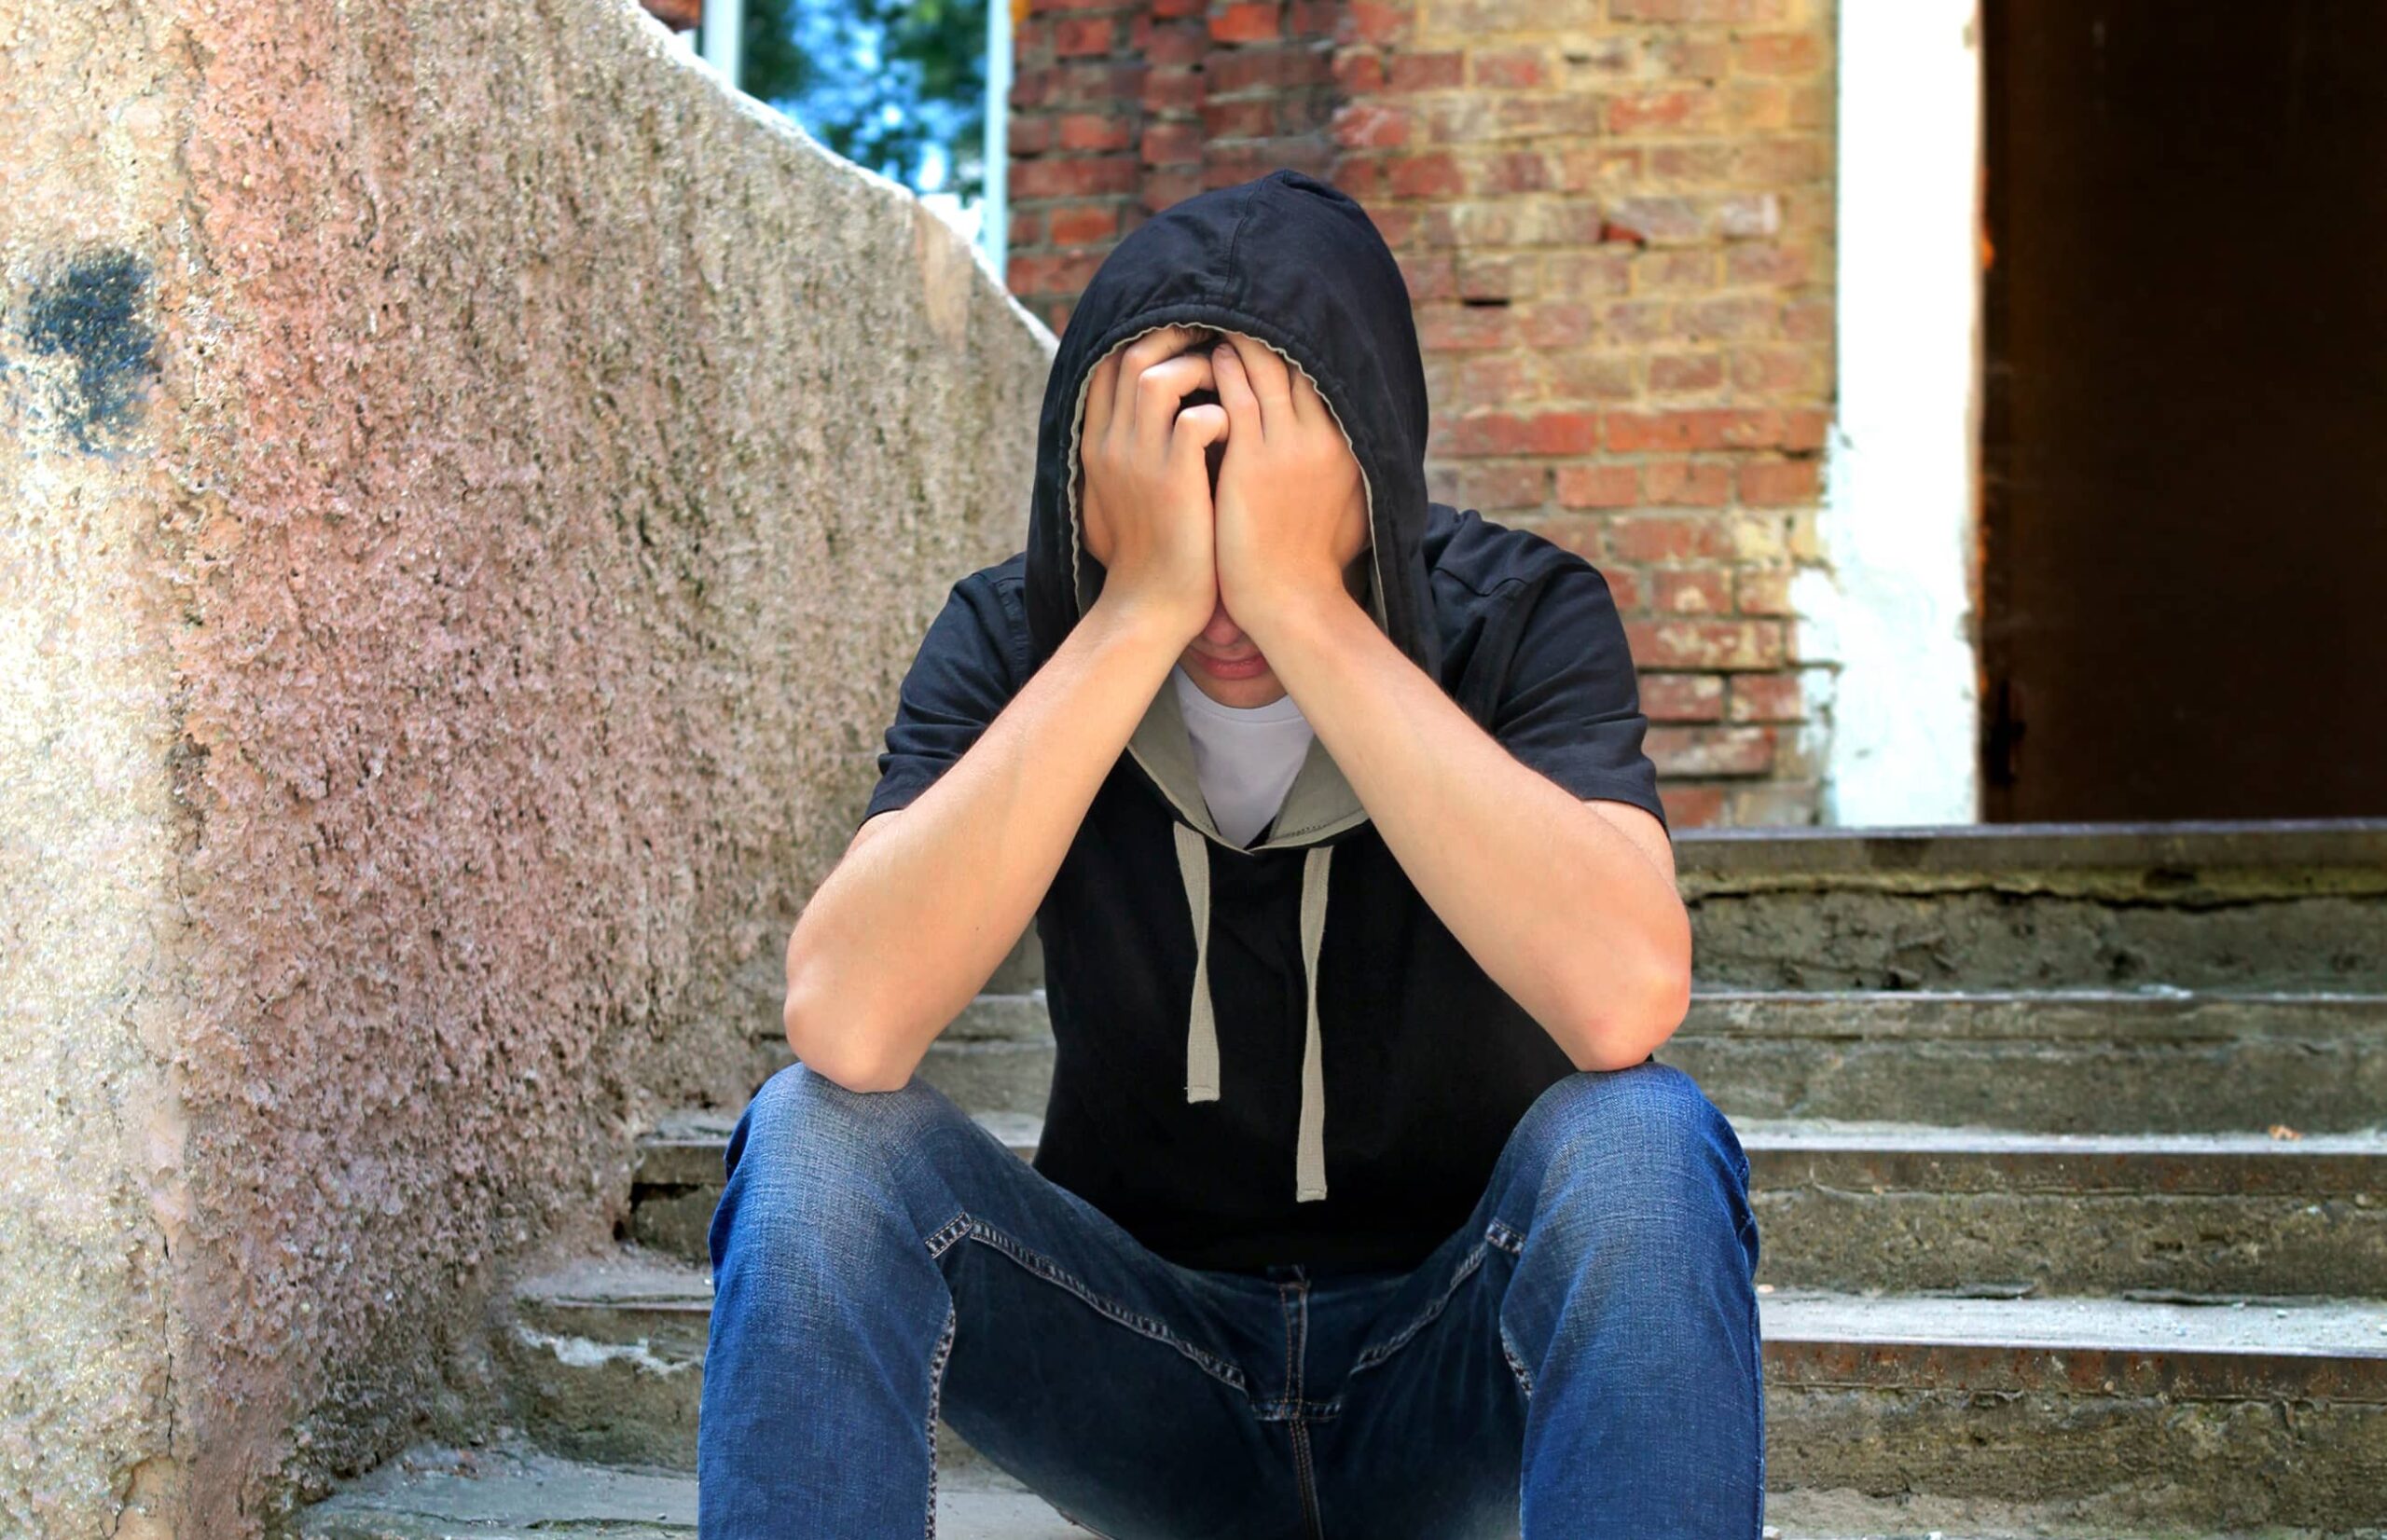 Augmentation alarmante des pensées suicidaires chez les jeunes adultes